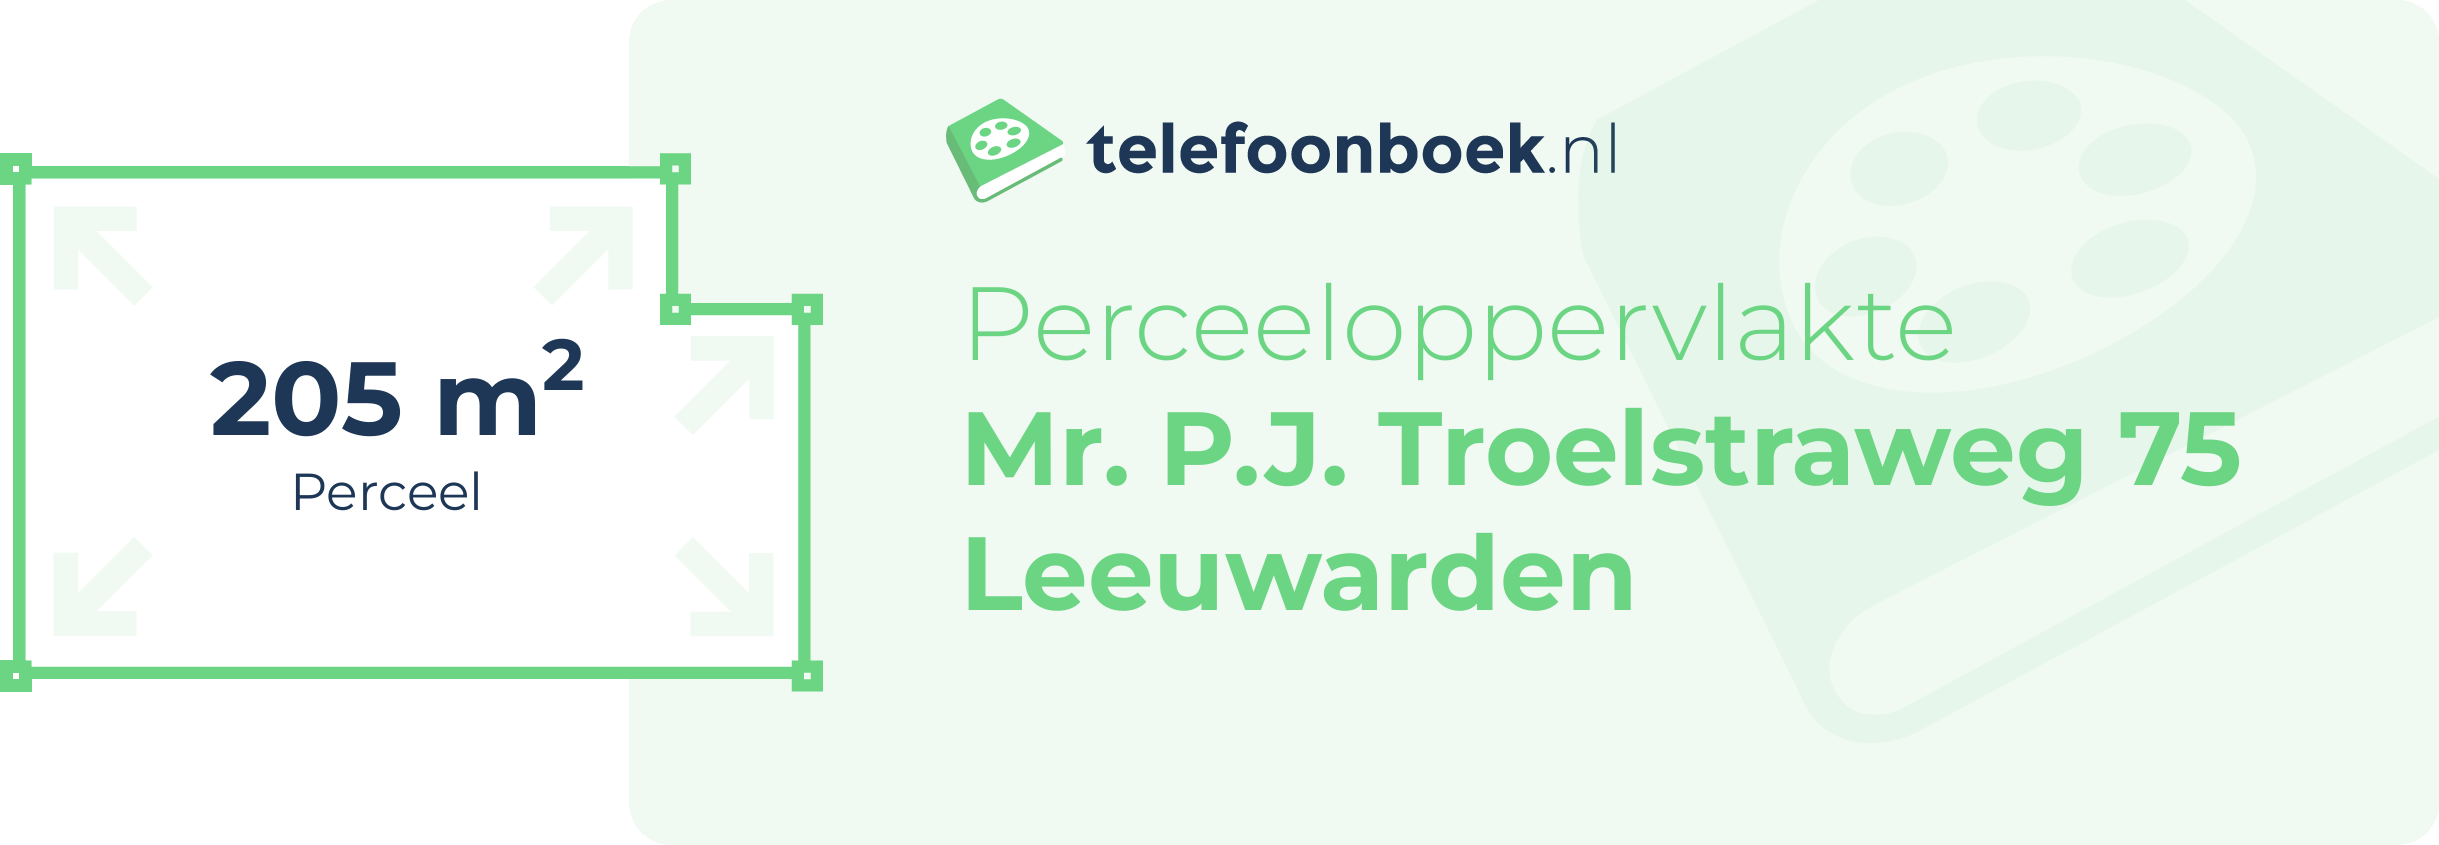 Perceeloppervlakte Mr. P.J. Troelstraweg 75 Leeuwarden